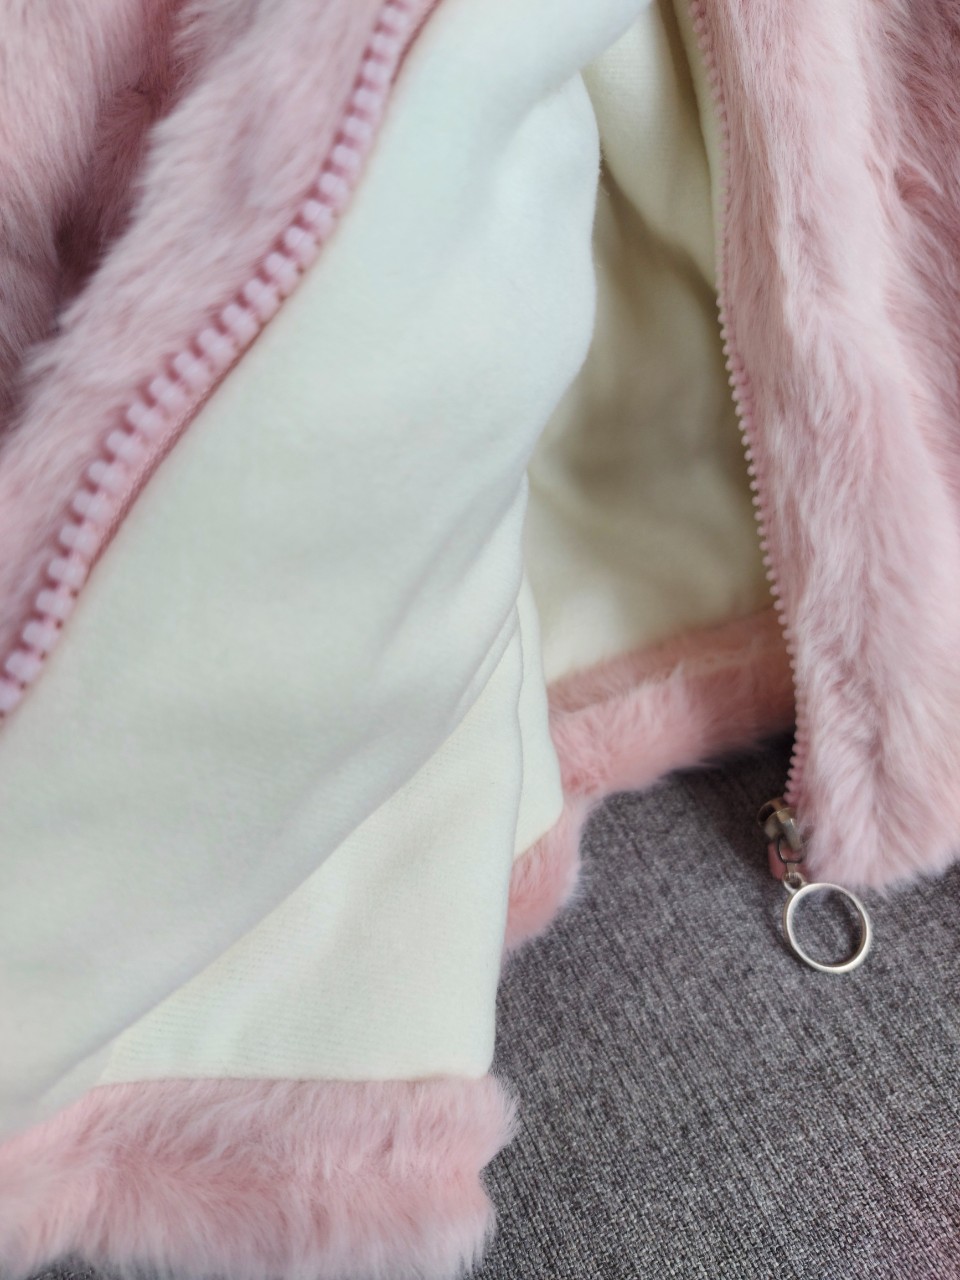 Áo khoác lông bé gái 2-7 tuổi tai thỏ kèm túi đeo. Áo lông cho bé siêu ấm hàng Quảng Châu cao cấp